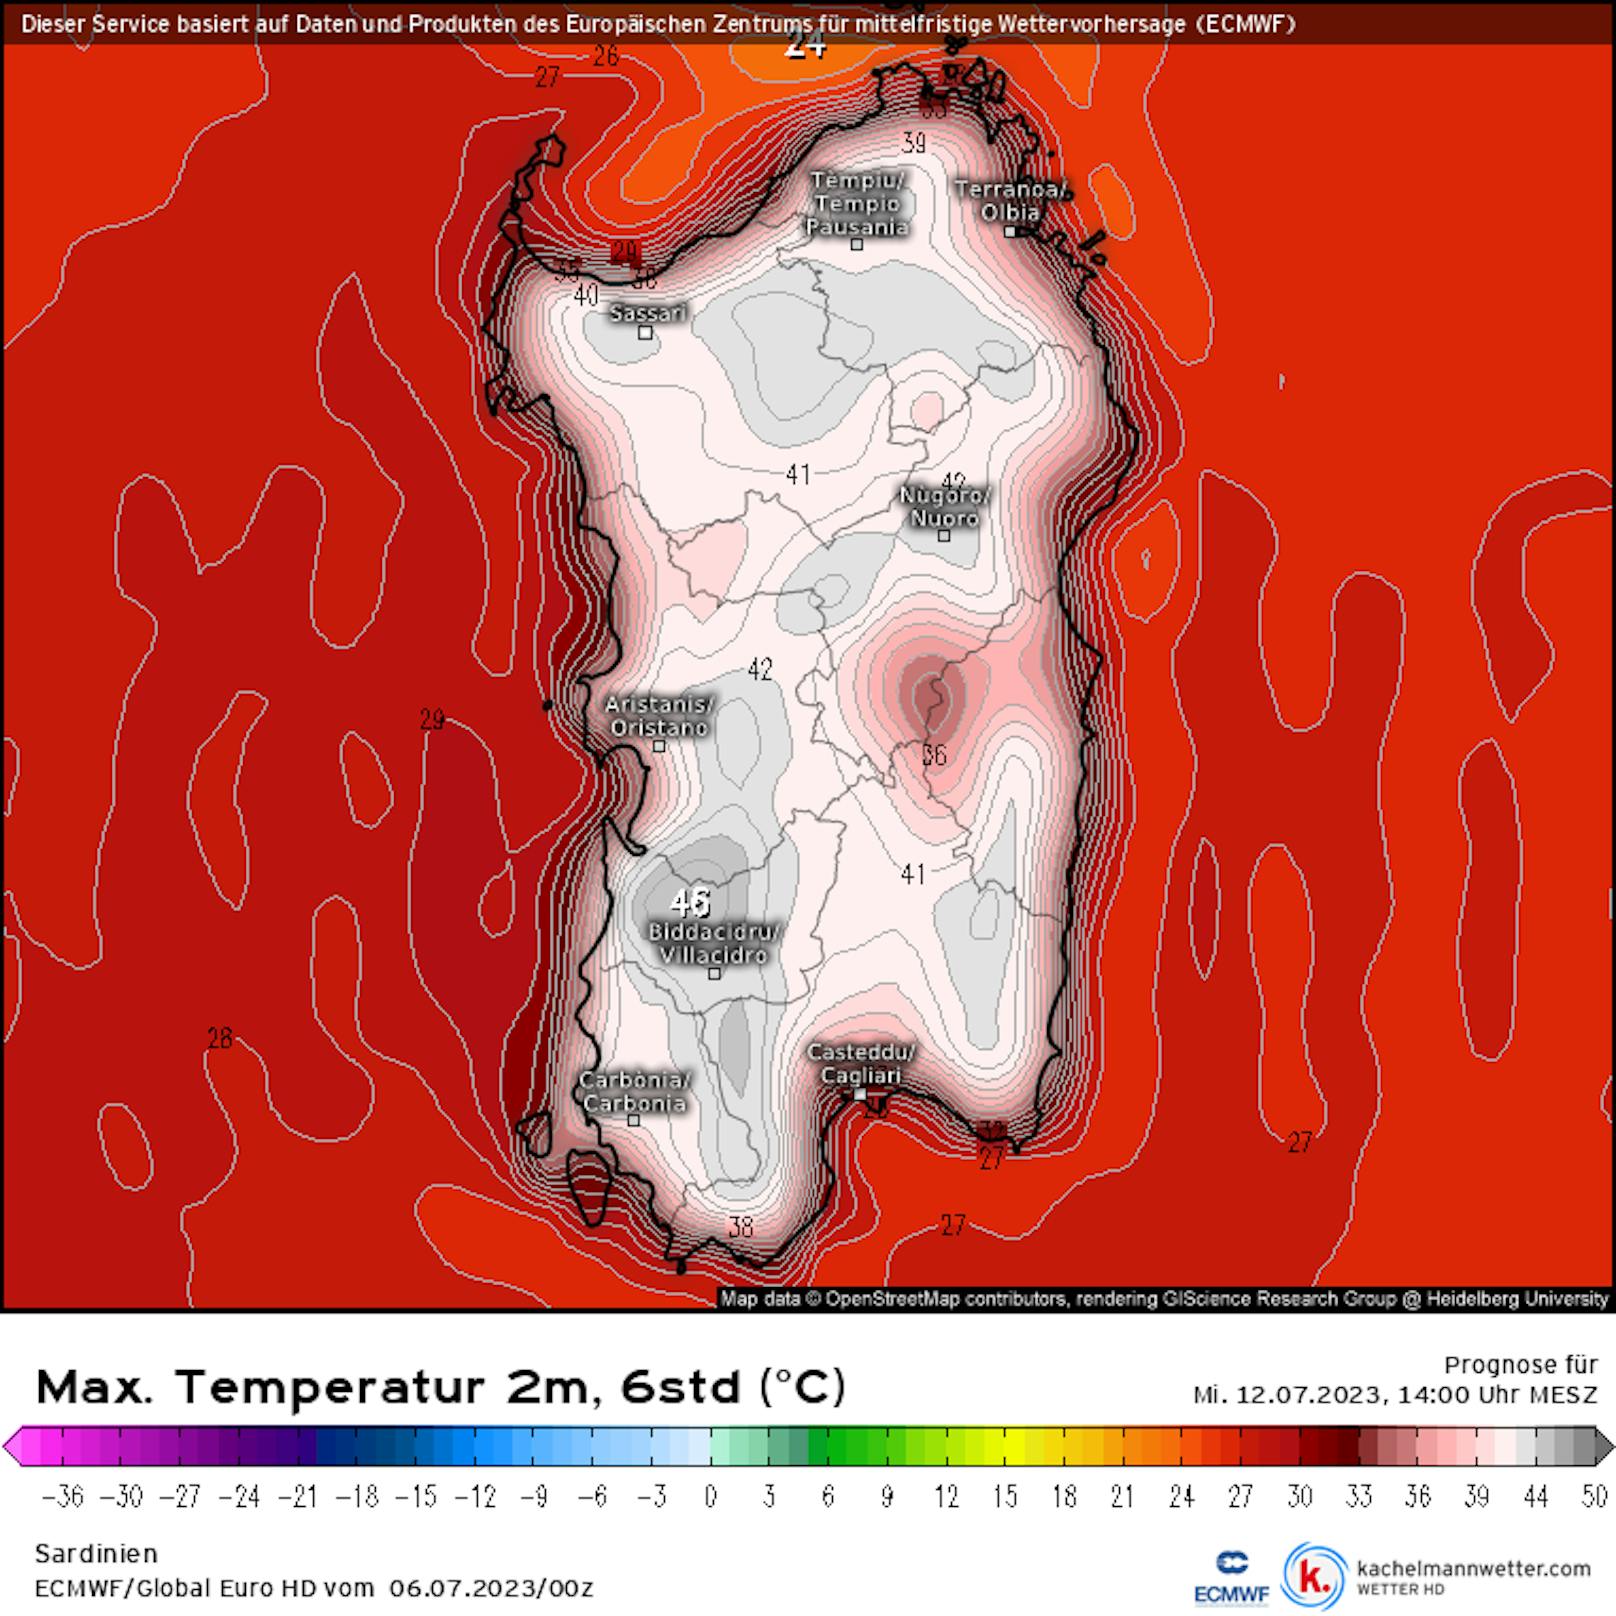 Noch extremer soll es nach derzeitiger Modellrechnung am Mittwoch, 12.7., auf Sardinien werden. Bis zu 46 Grad sind angesagt.